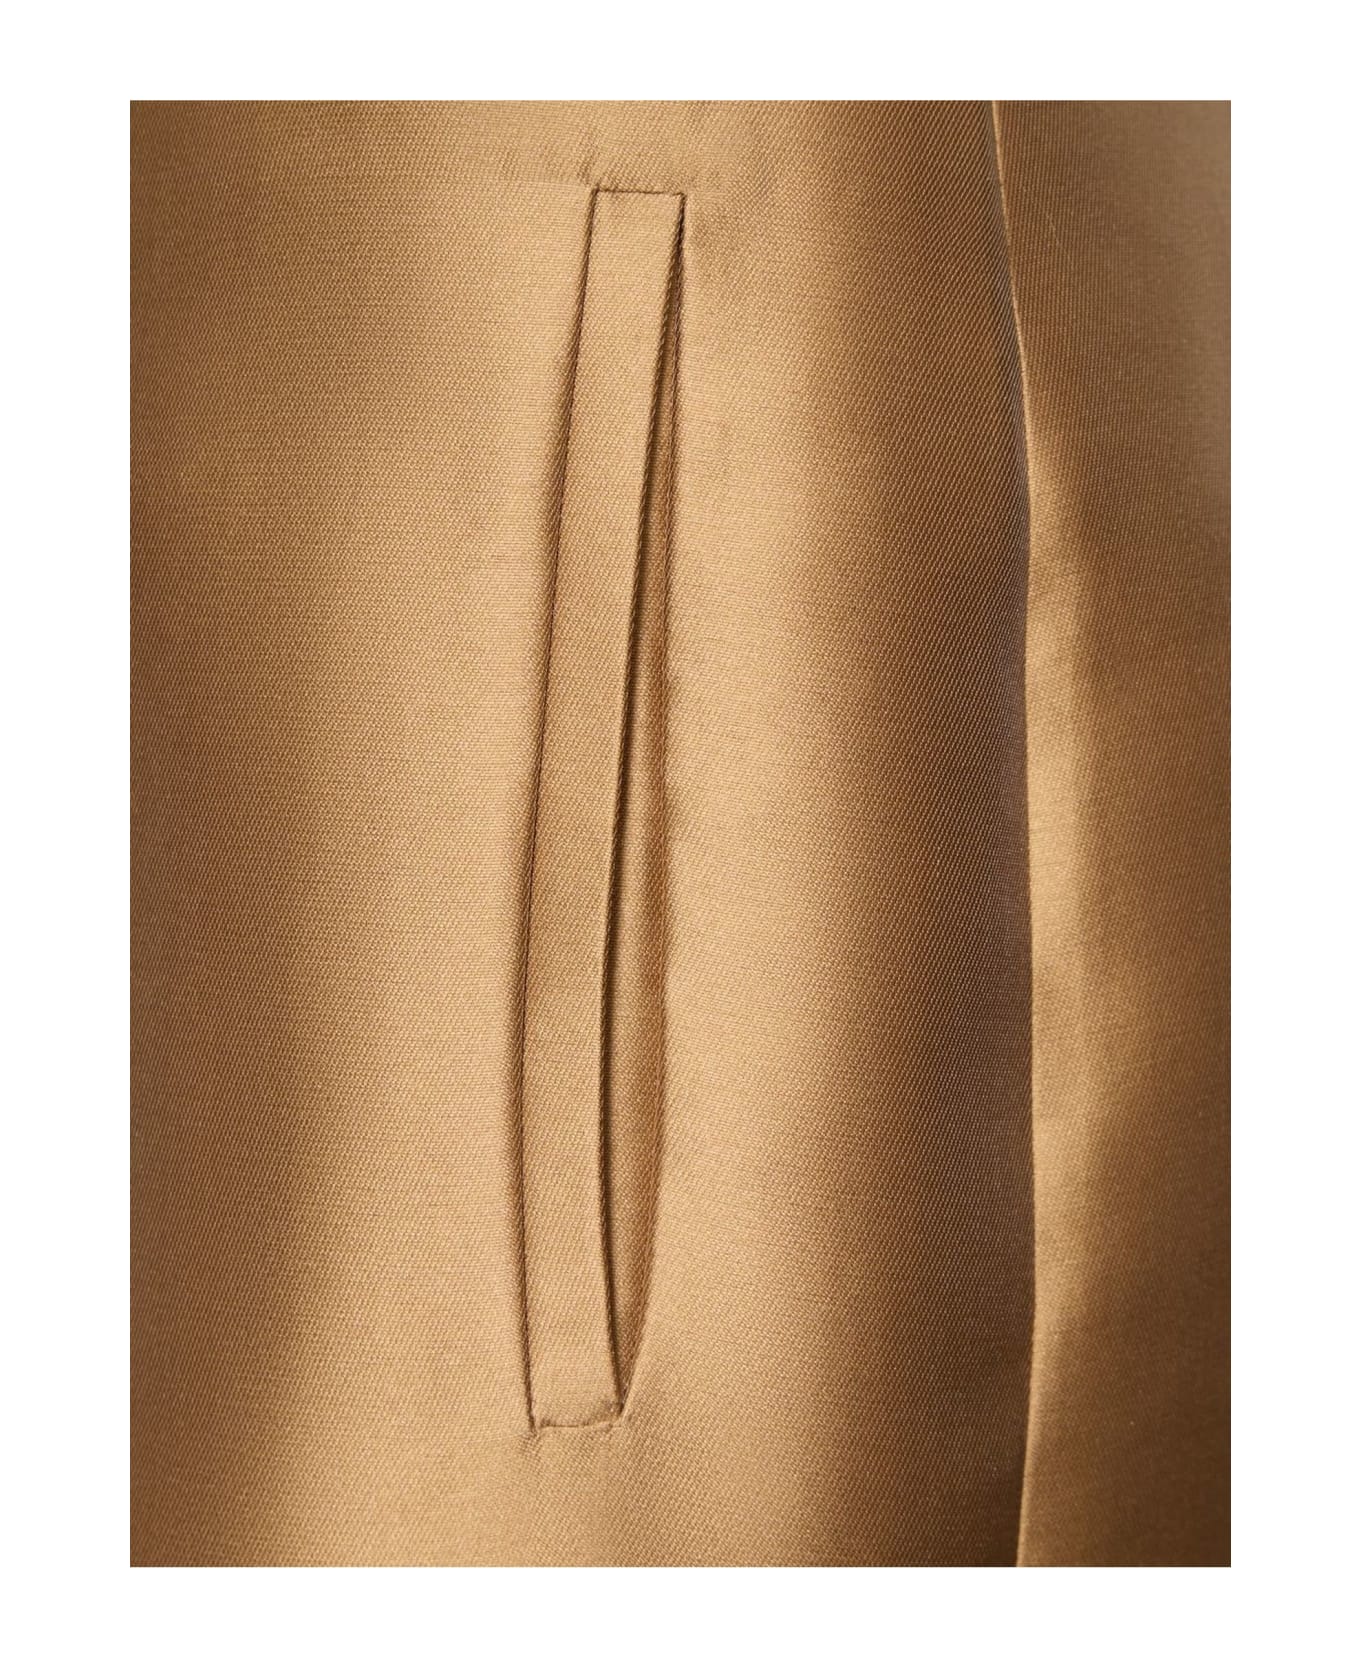 Alberta Ferretti Tailored-cut Mikado Cigarette Pants - Brown ボトムス